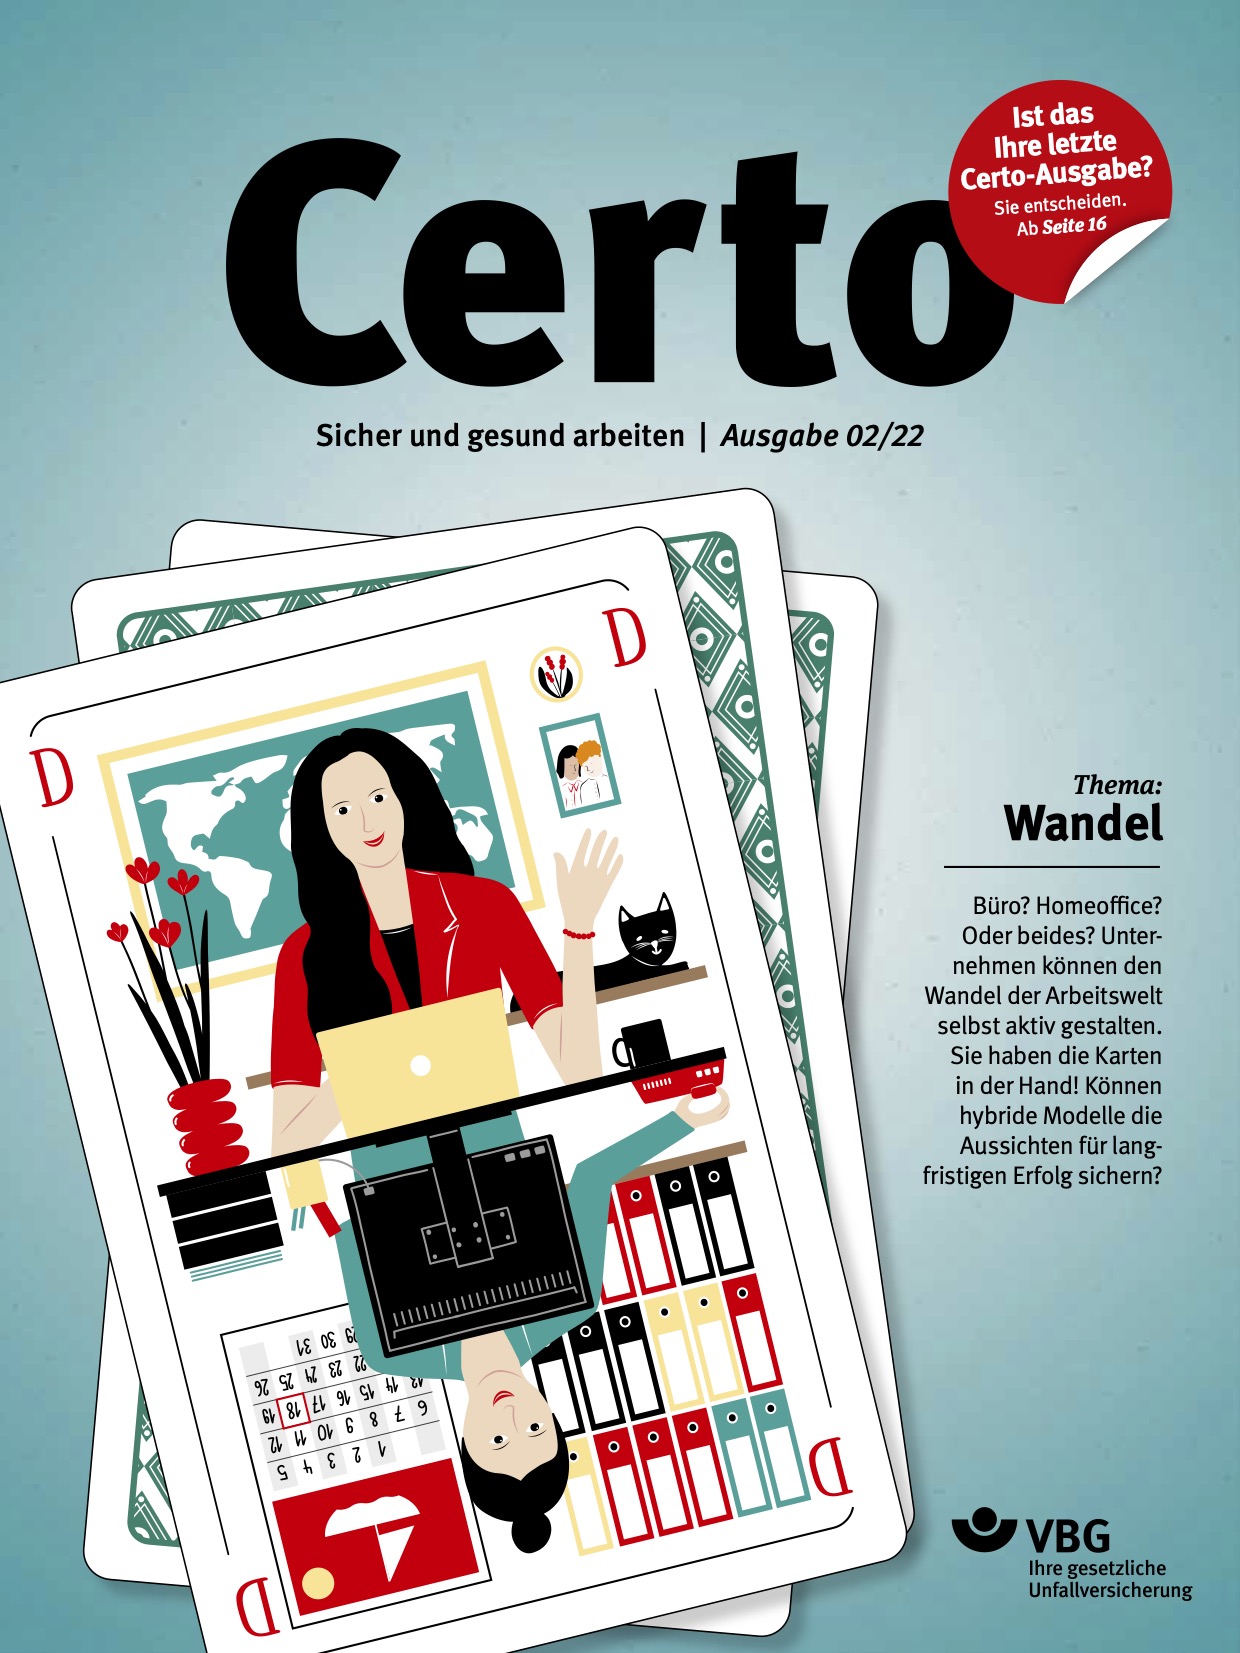 Titelseite der Certo-Ausgabe 02/2022. Das Titelthema lautet "Wandel".